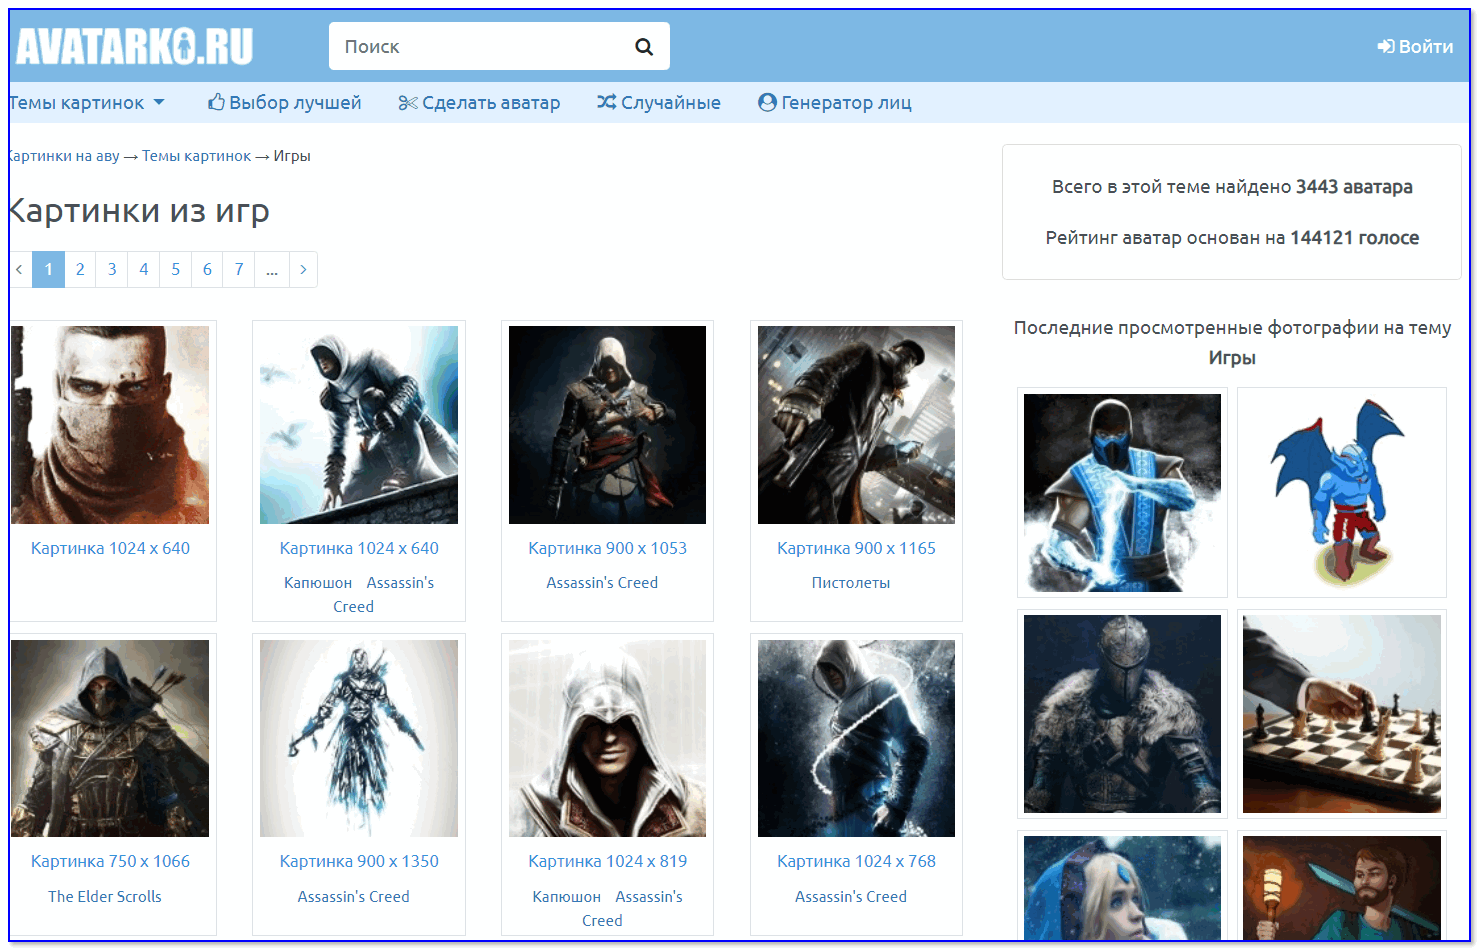 Скрин с сайта avatarko.ru